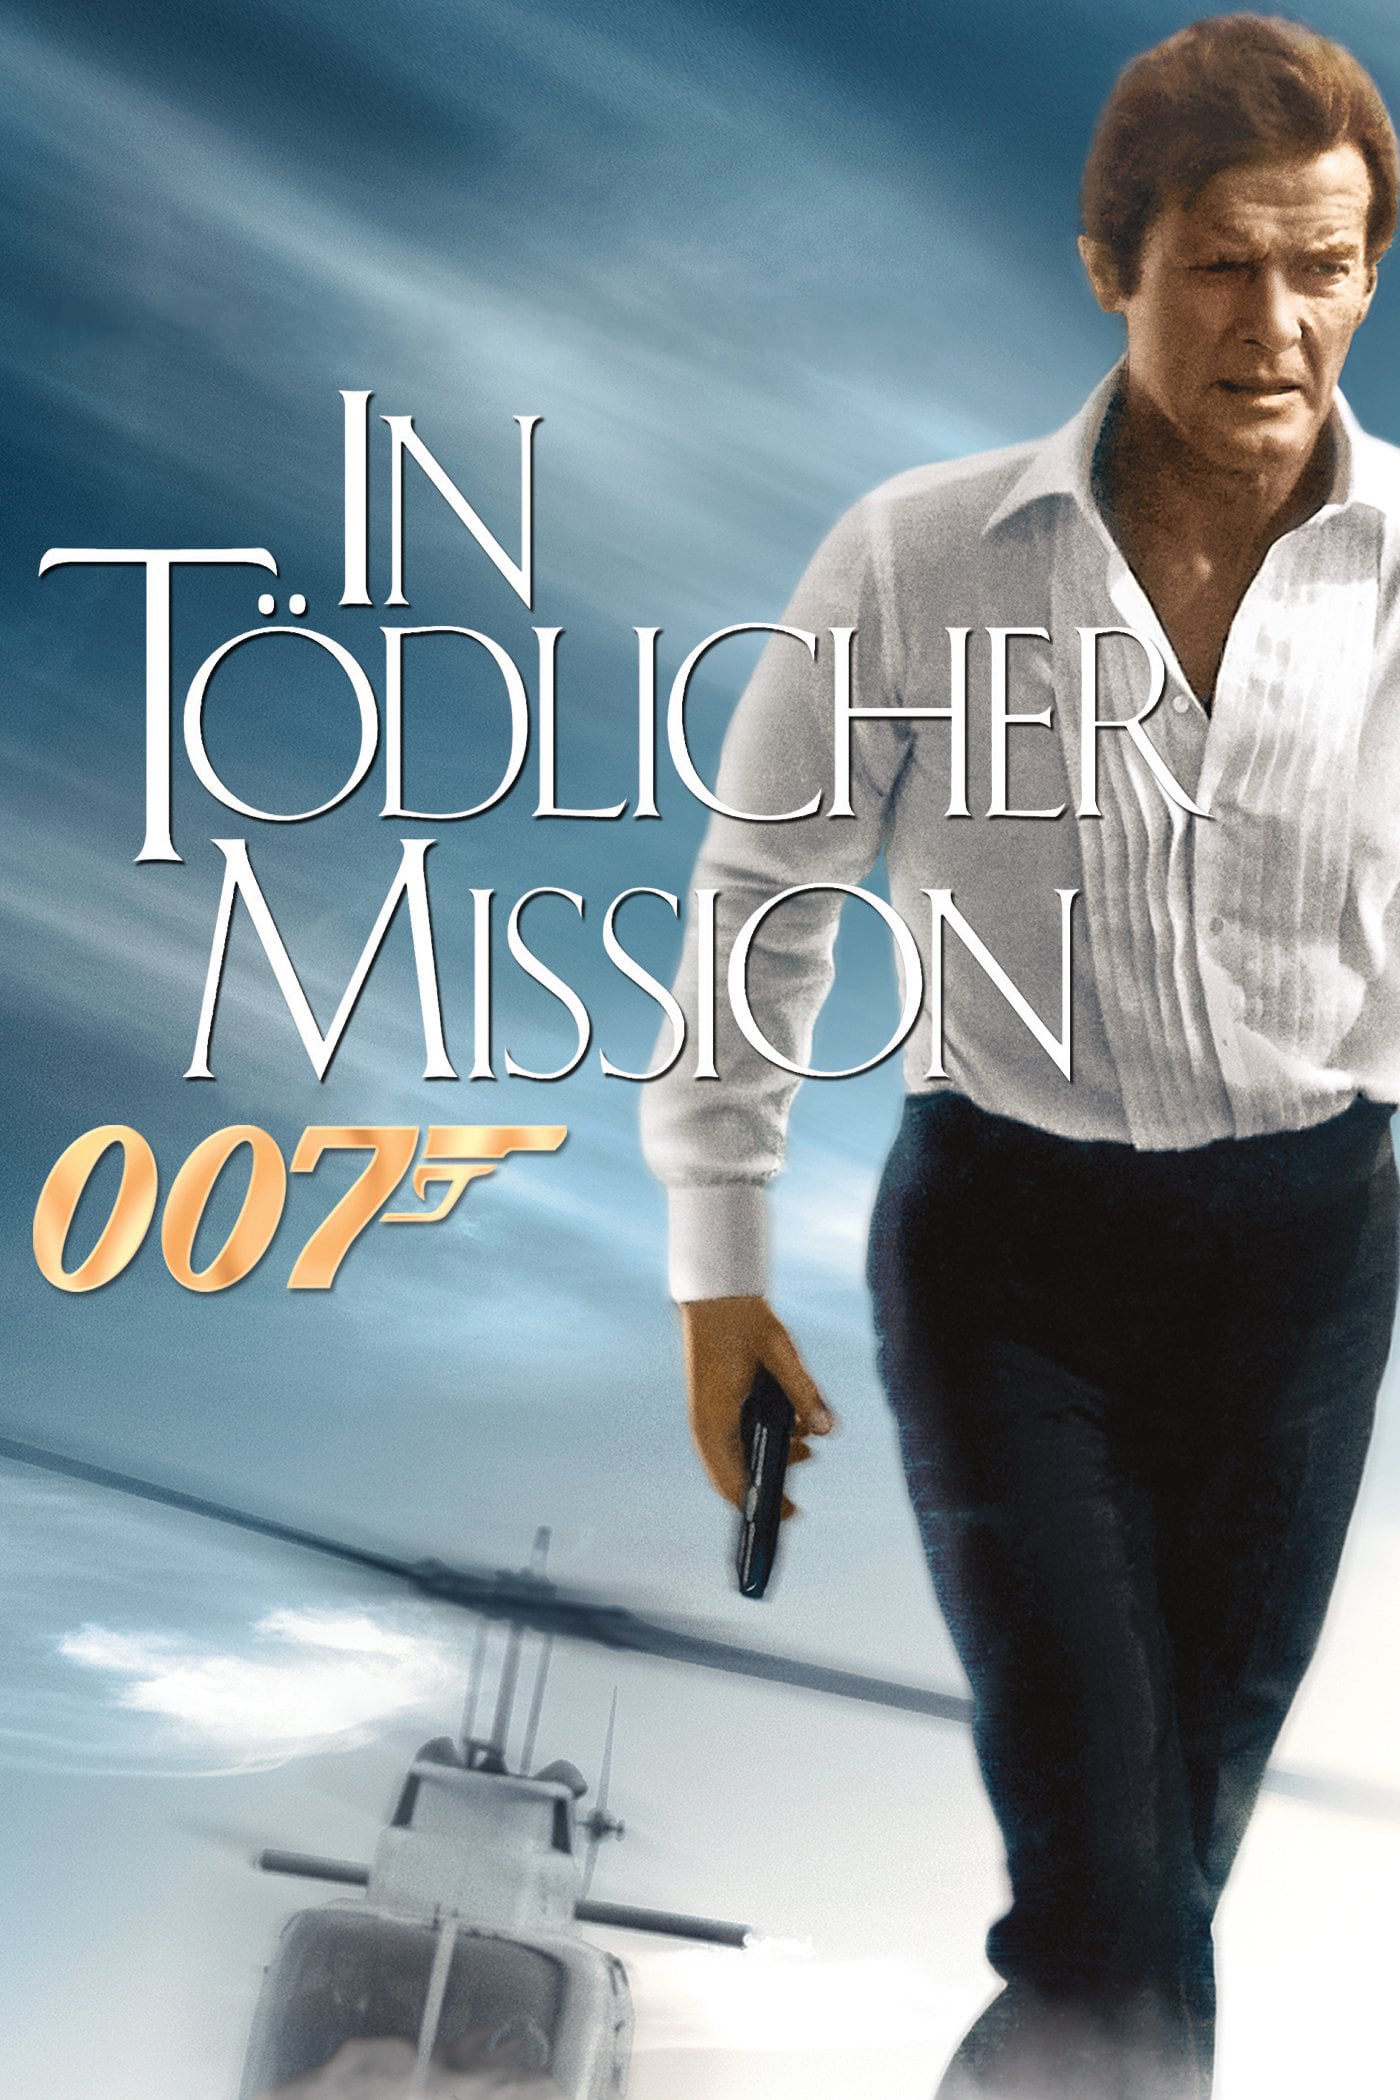 Plakat von "James Bond 007 - In tödlicher Mission"